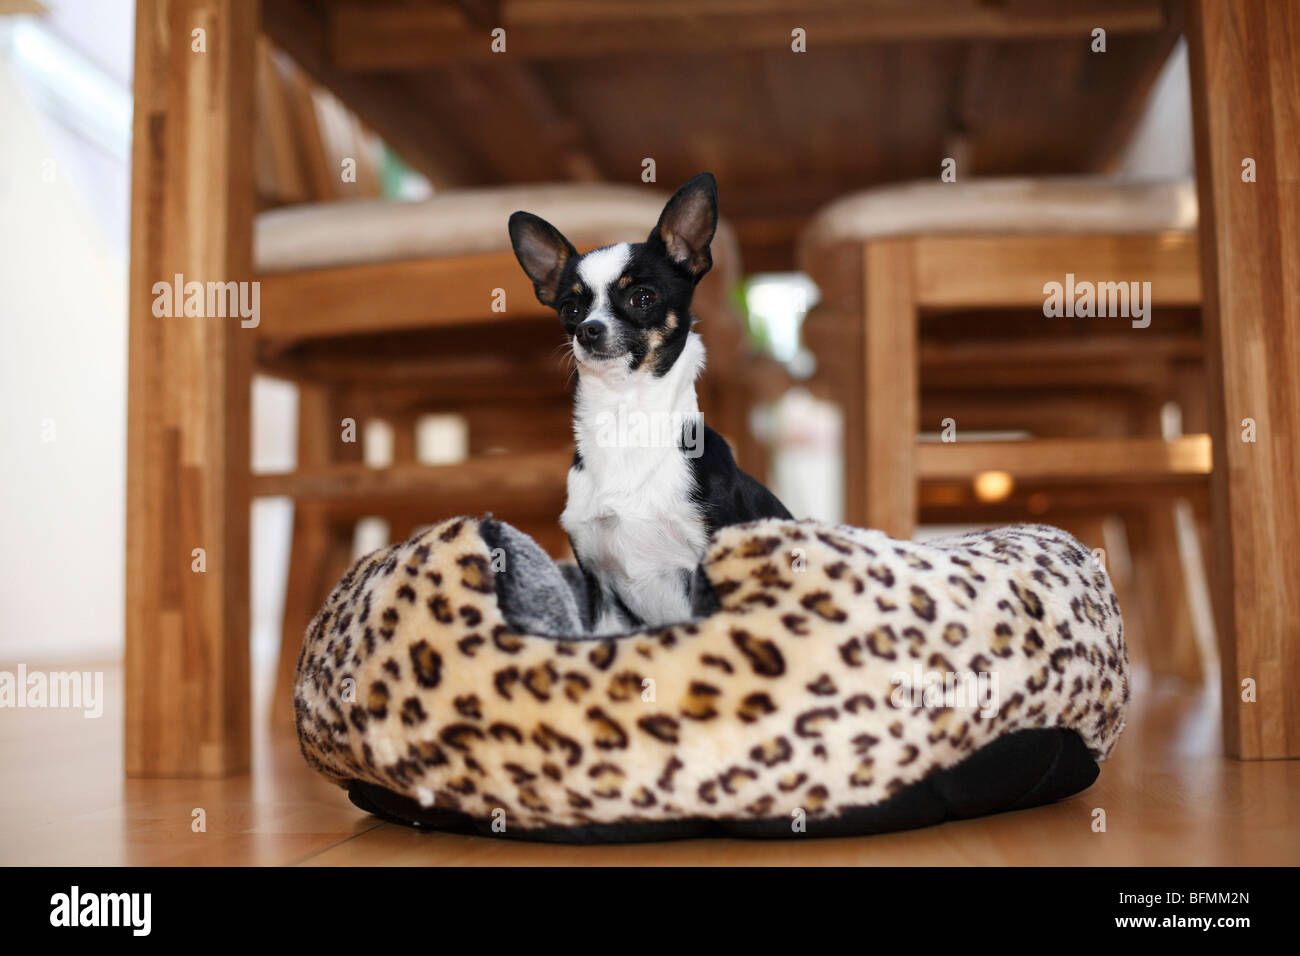 Perro de raza mixta (Canis lupus familiaris) f., tres años Chihuahua-toyterrier-mix perro sentado en una canasta, Alemania Foto de stock